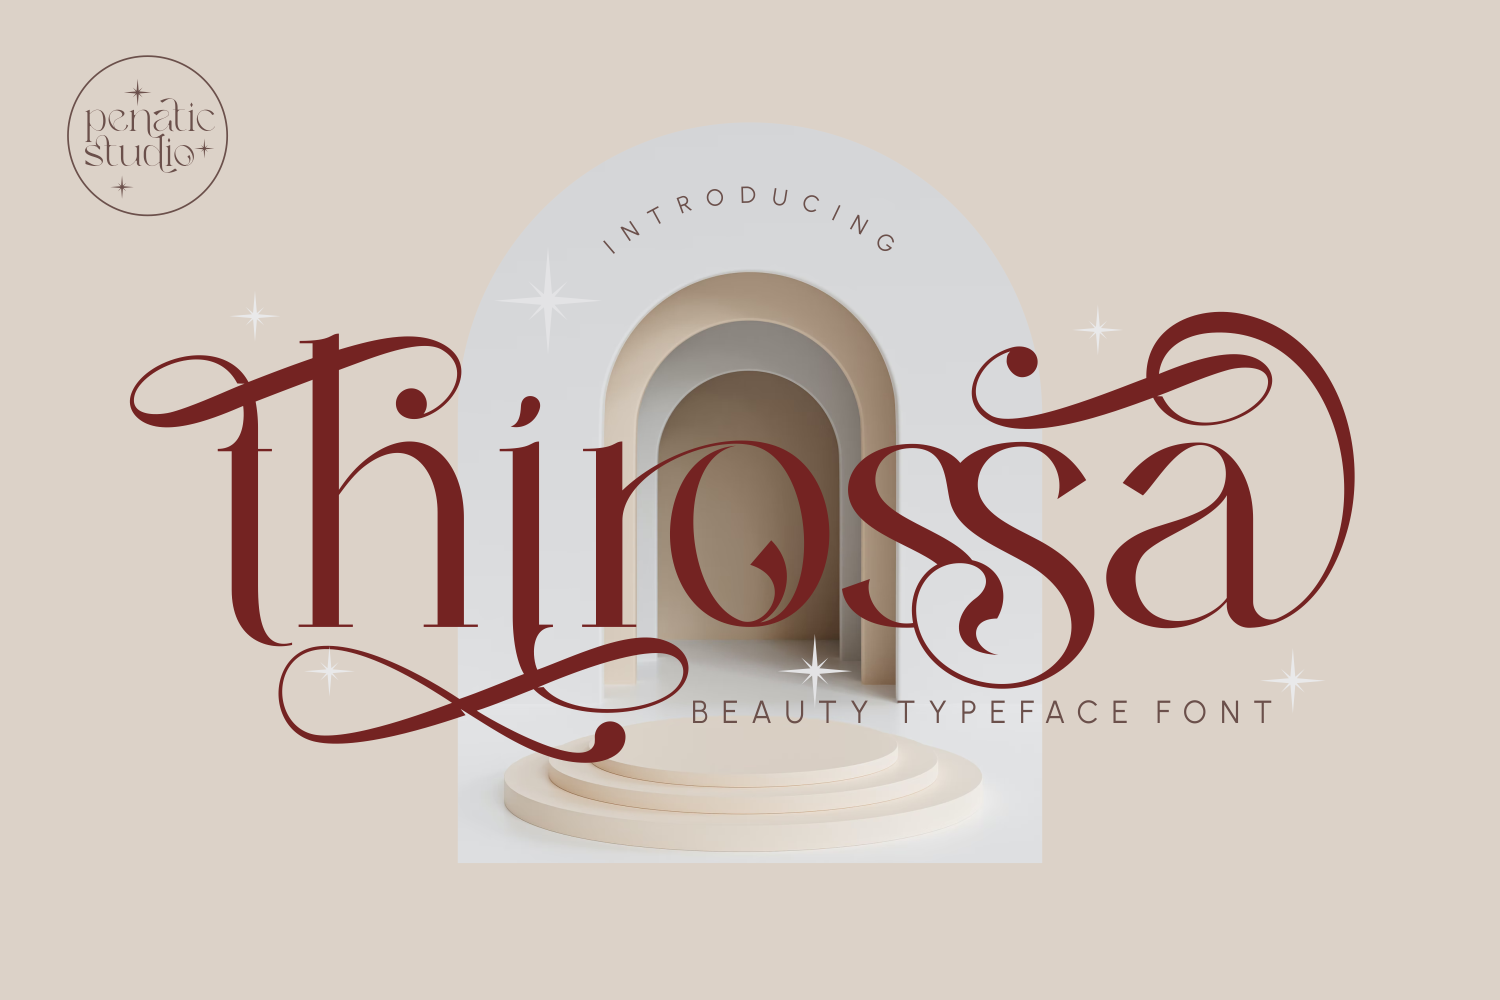 Thirossa